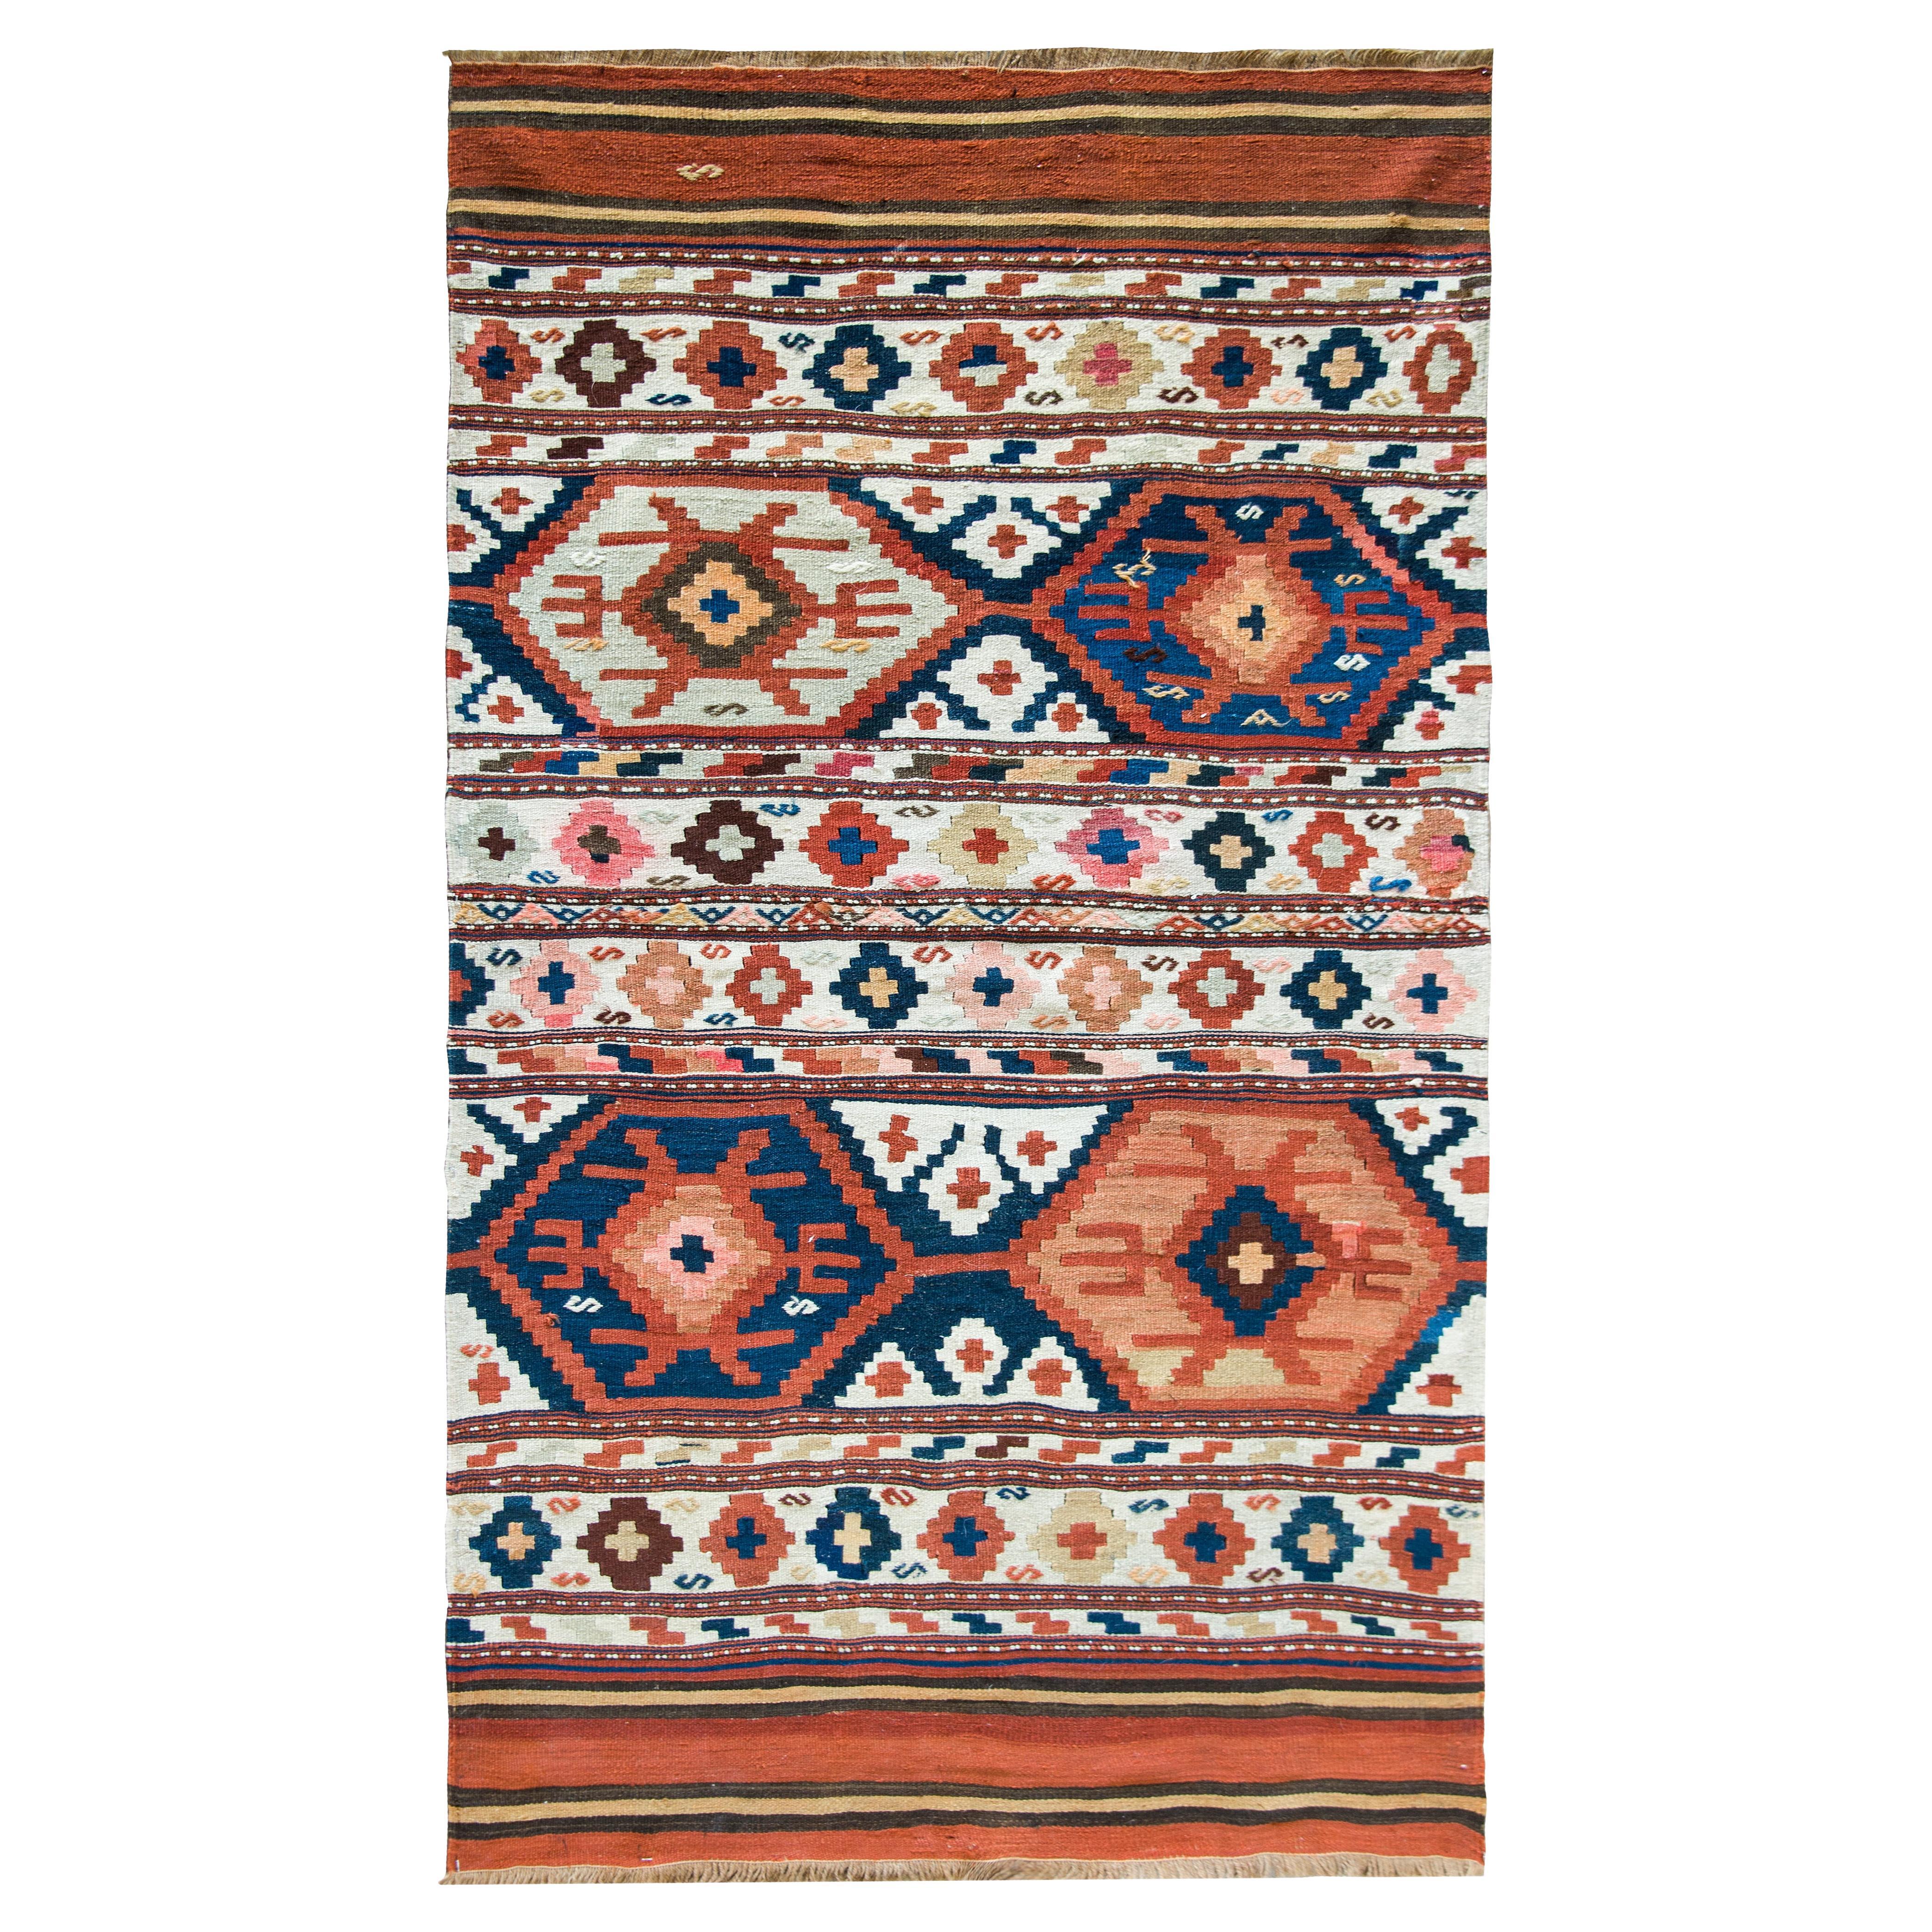 Persischer Azari-Kelim-Teppich aus dem frühen 20. Jahrhundert